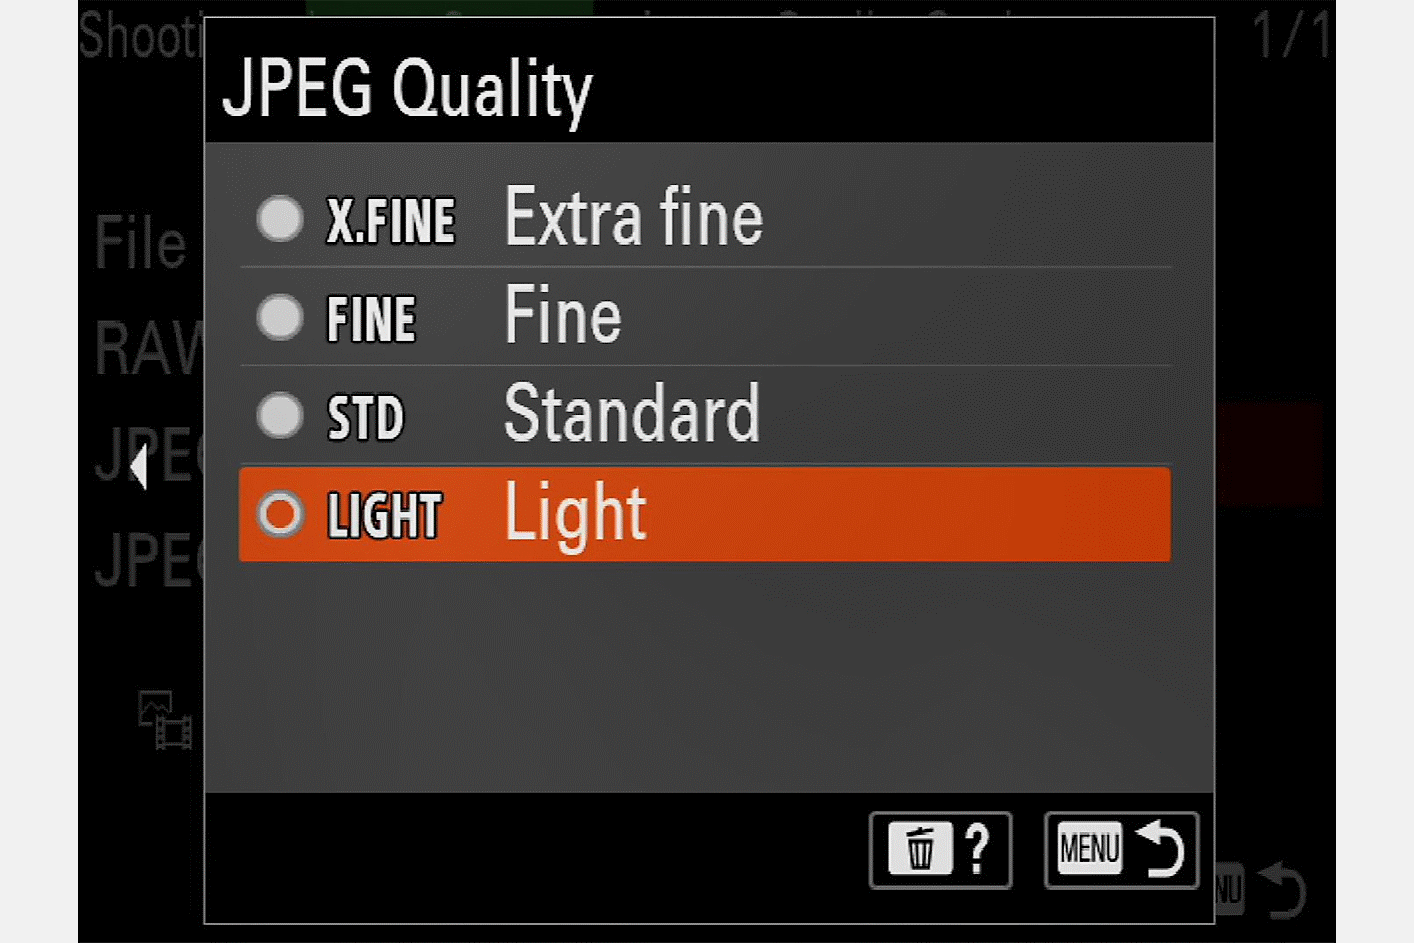 Menu "Qualité JPEG" de l'appareil photo avec le curseur sur "Léger"